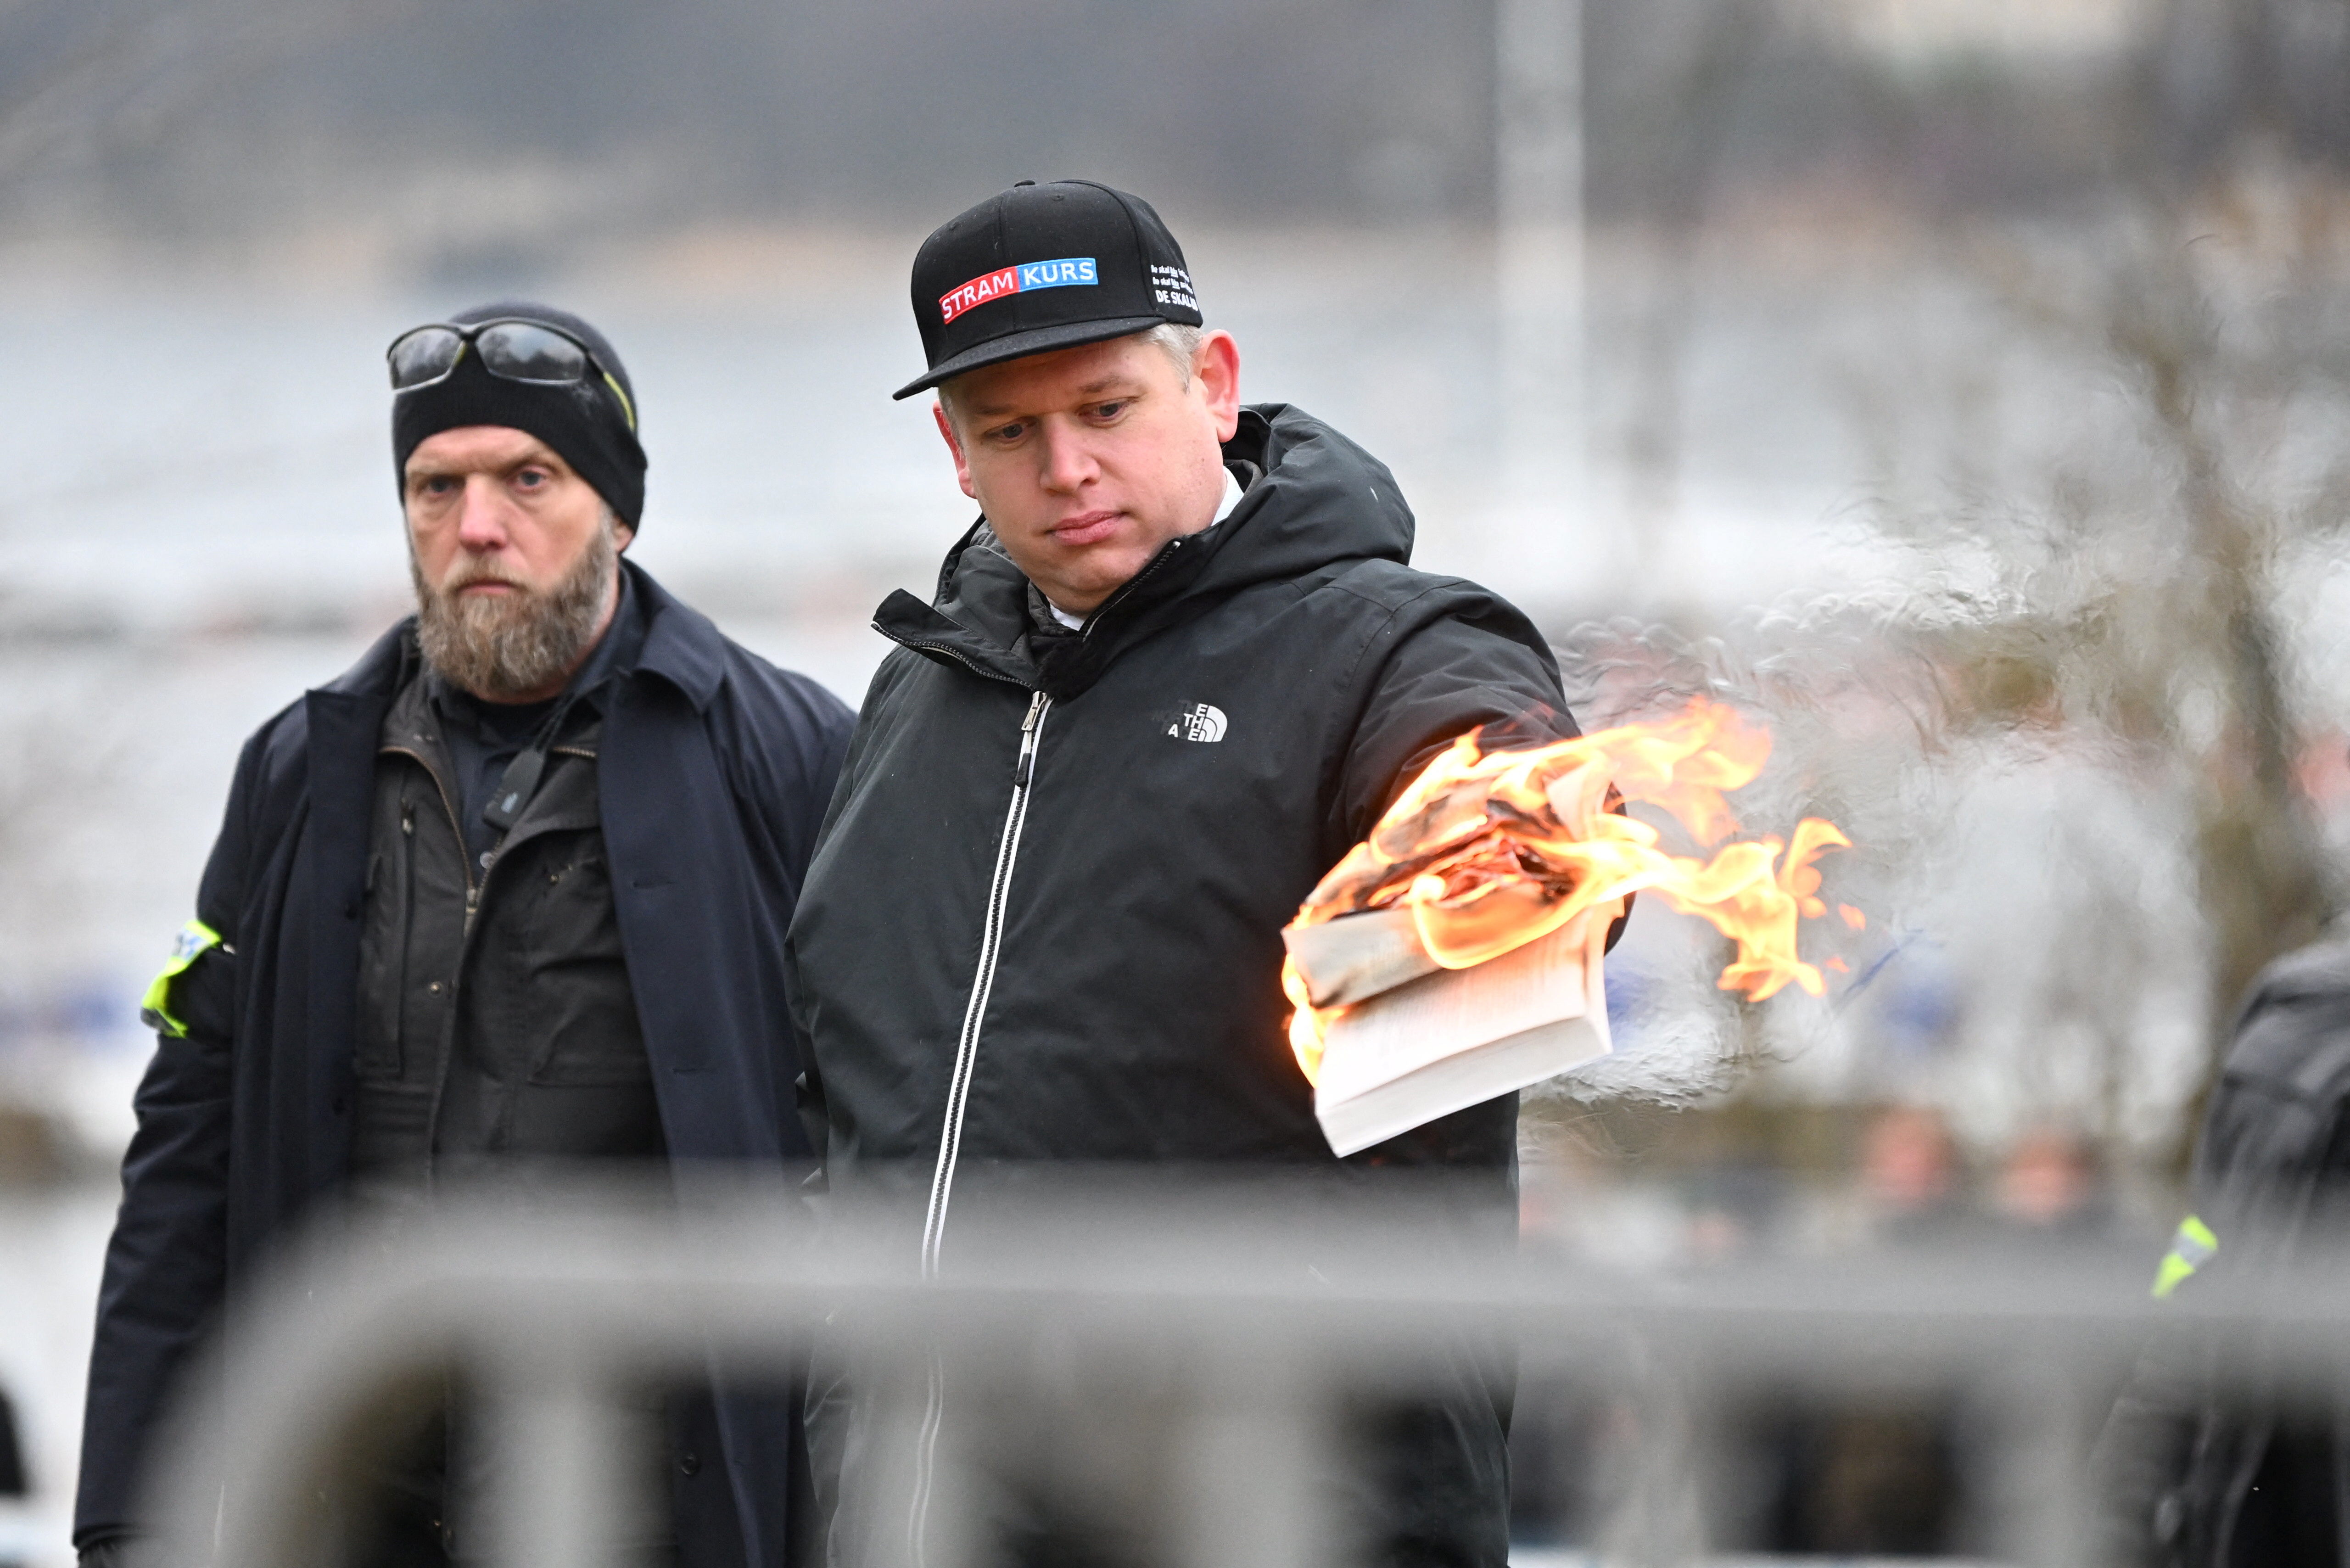 El politico Danés-sueco de extrema derecha Rasmus Paludan prendió fuego el sábado a un ejemplar del Corán frente a la embajada de Turquía en la capital sueca, (Fredrik Sandberg/TT News Agency/via REUTERS)